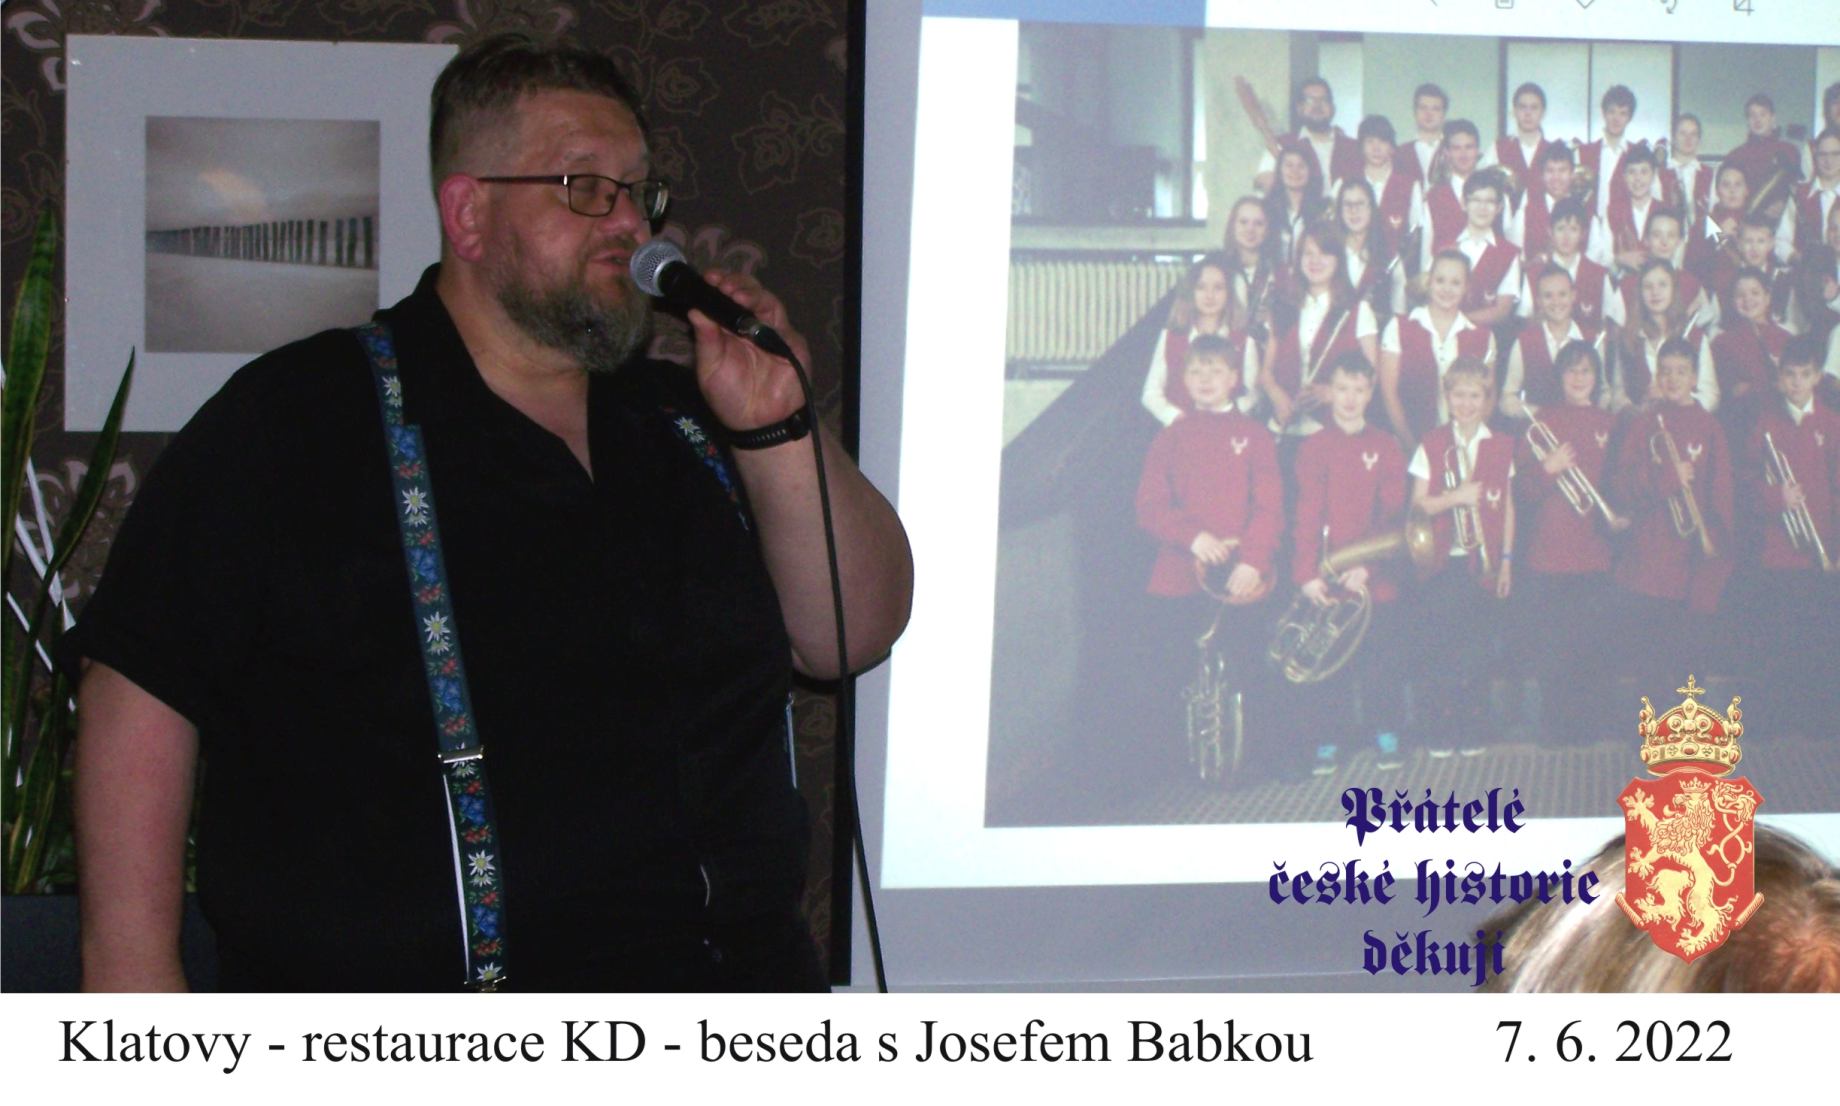 Beseda s Josefem Babkou, roupovským patriotem, hudebníkem a pedagogem.